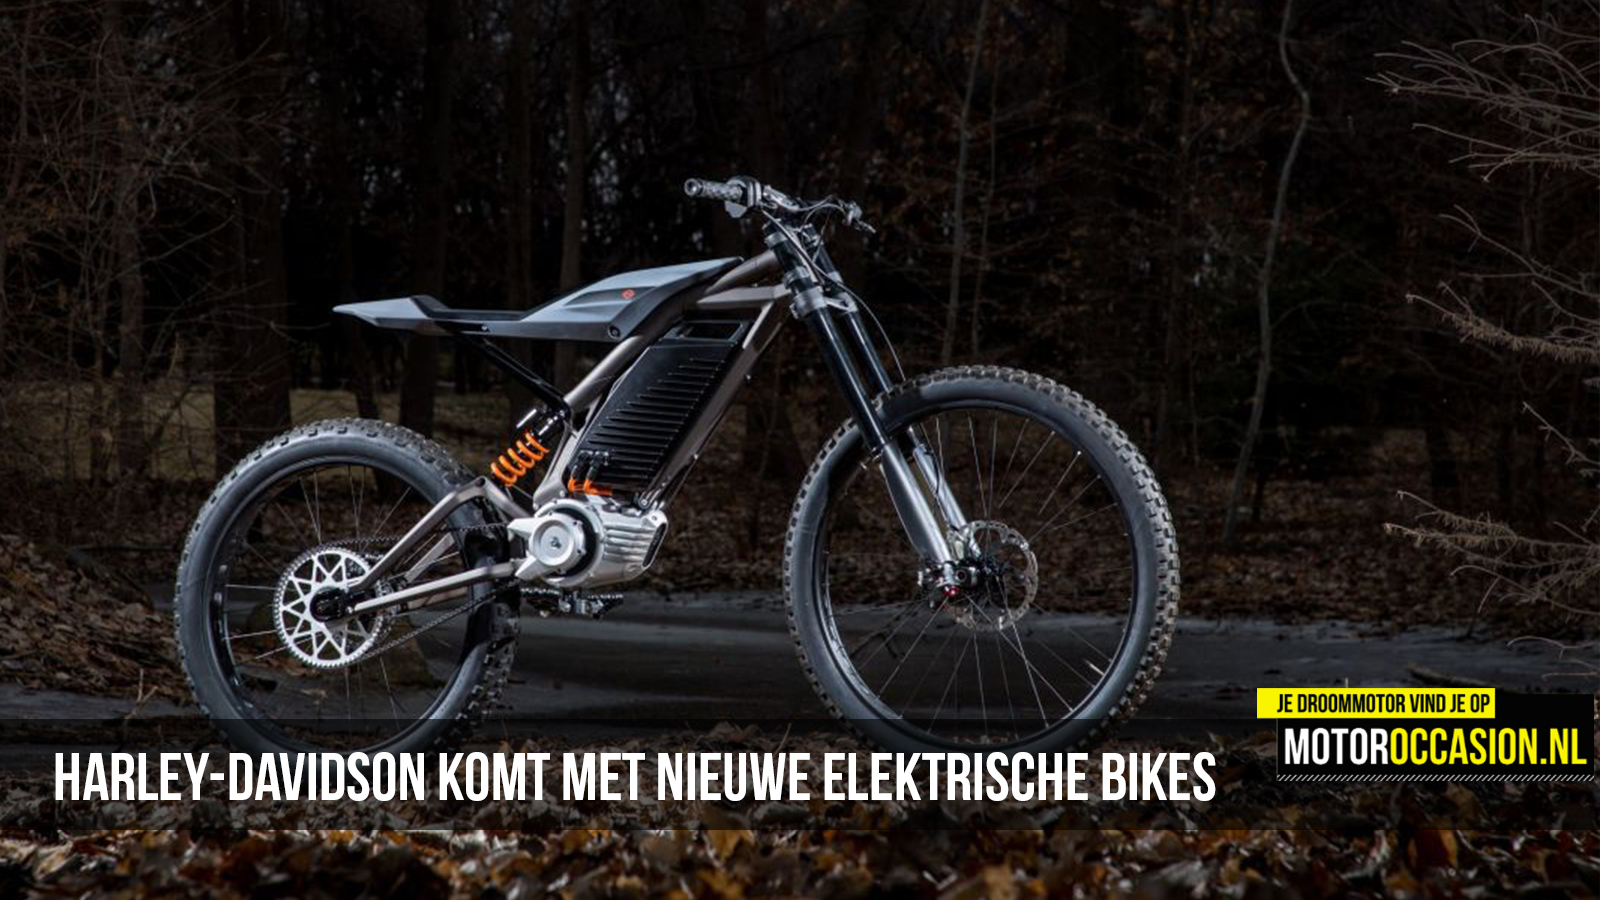 belangrijk Vervloekt paradijs Motoroccasion.nl, Harley-Davidson komt met nieuwe elektrische bikes -  17-01-2019